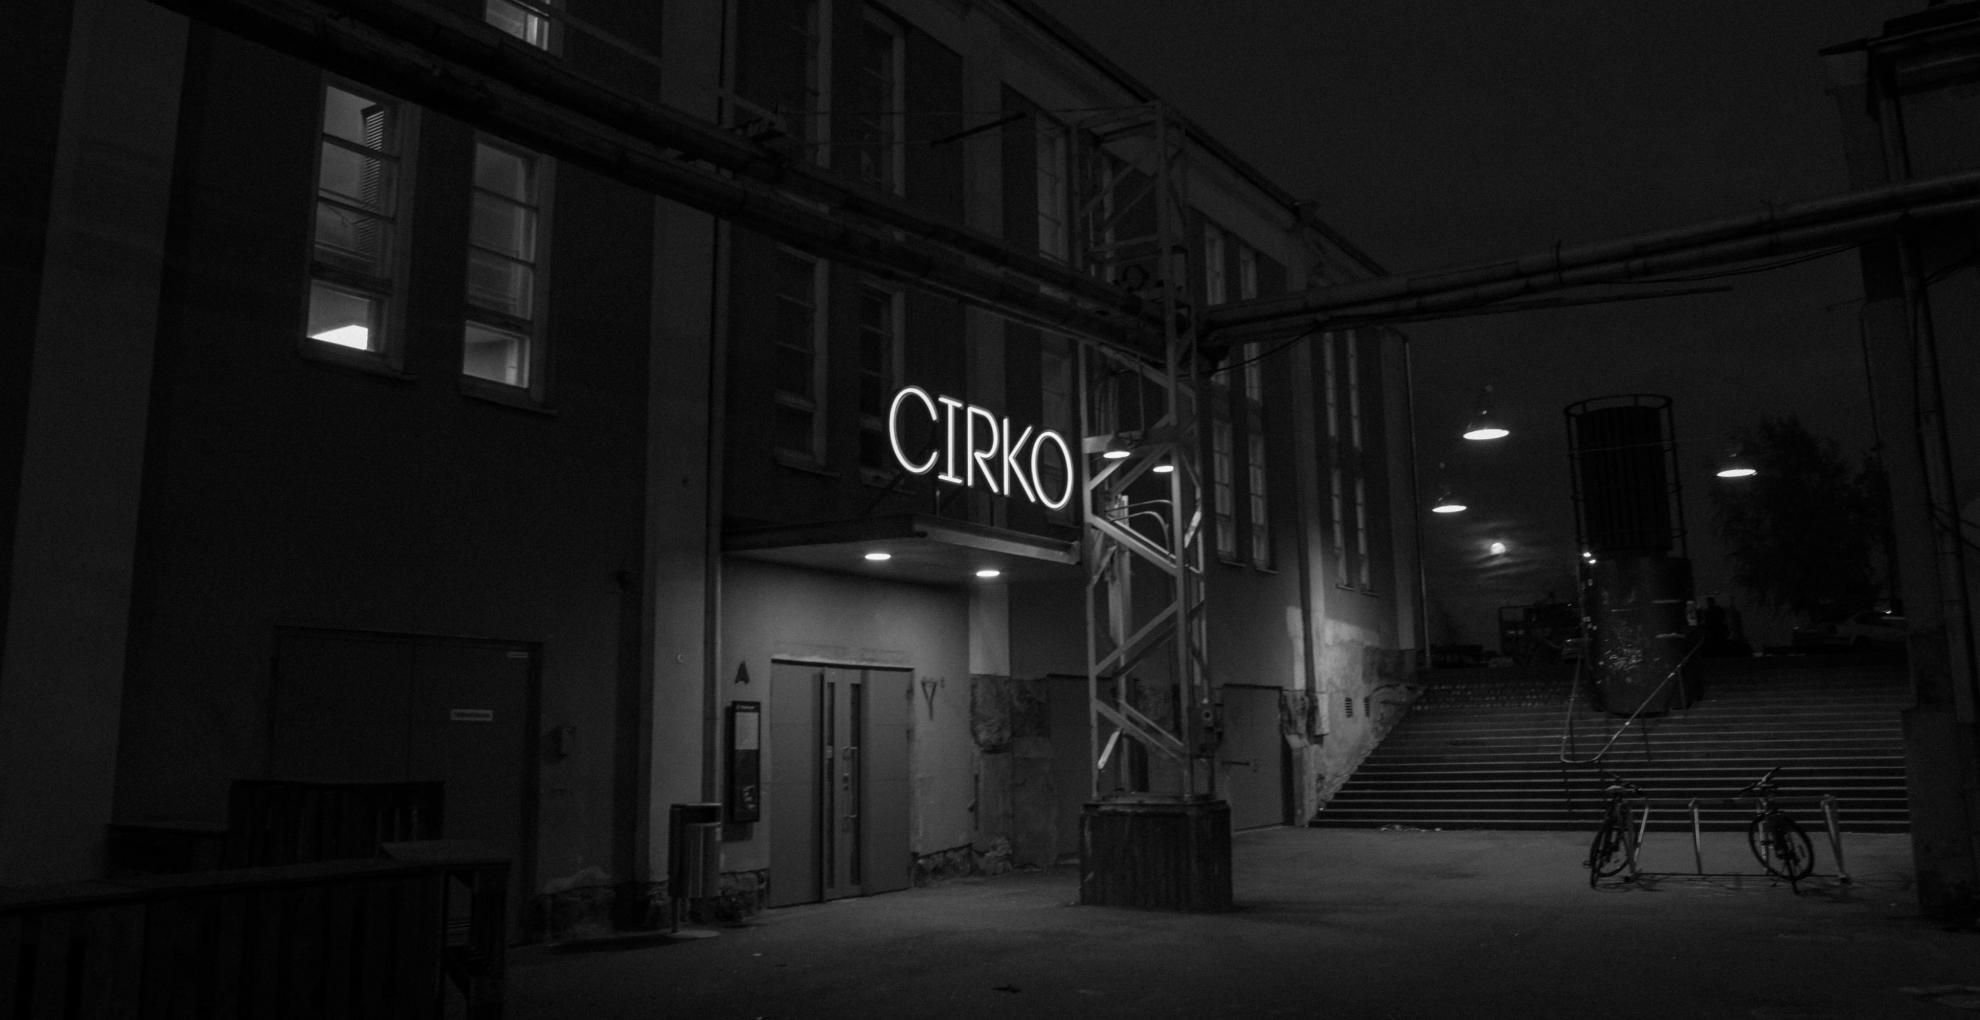 Kuva toimipisteestä: Cirko - Uuden sirkuksen keskus